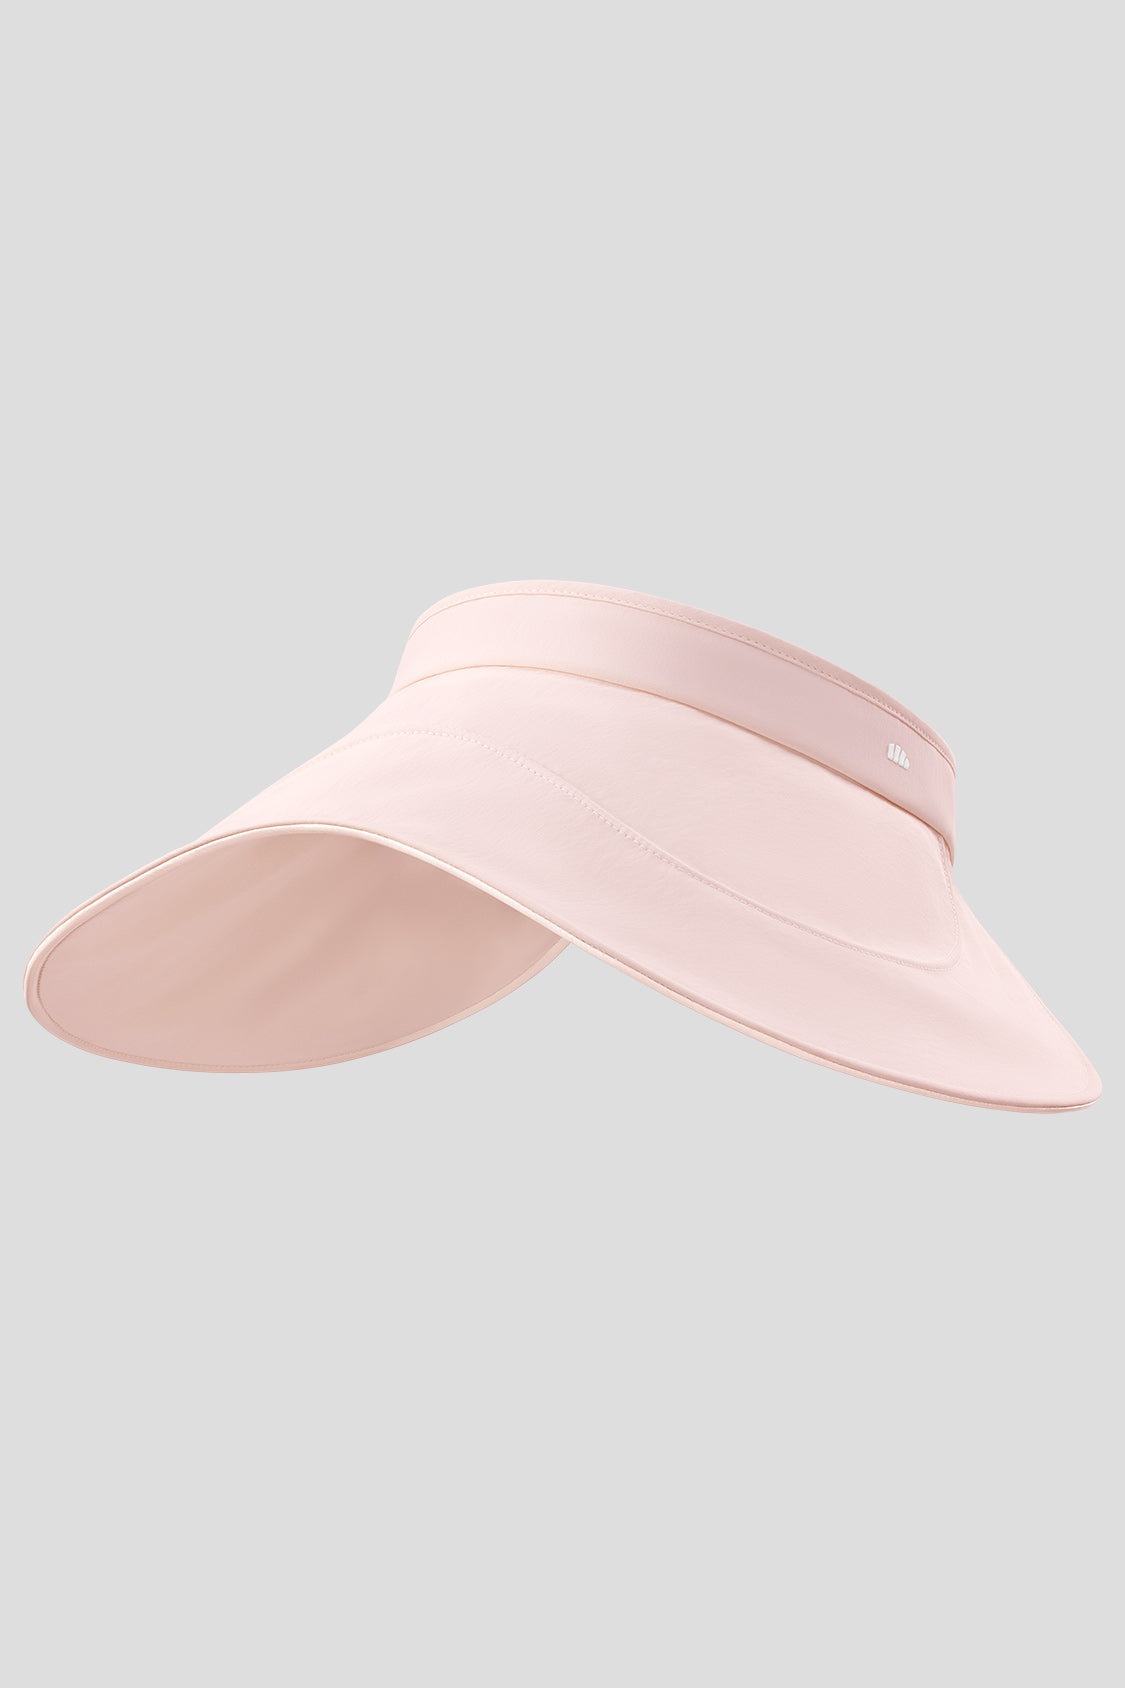 KSCYKKKD Hats for Women Female Sun Solid Sunshade and Sunscreen